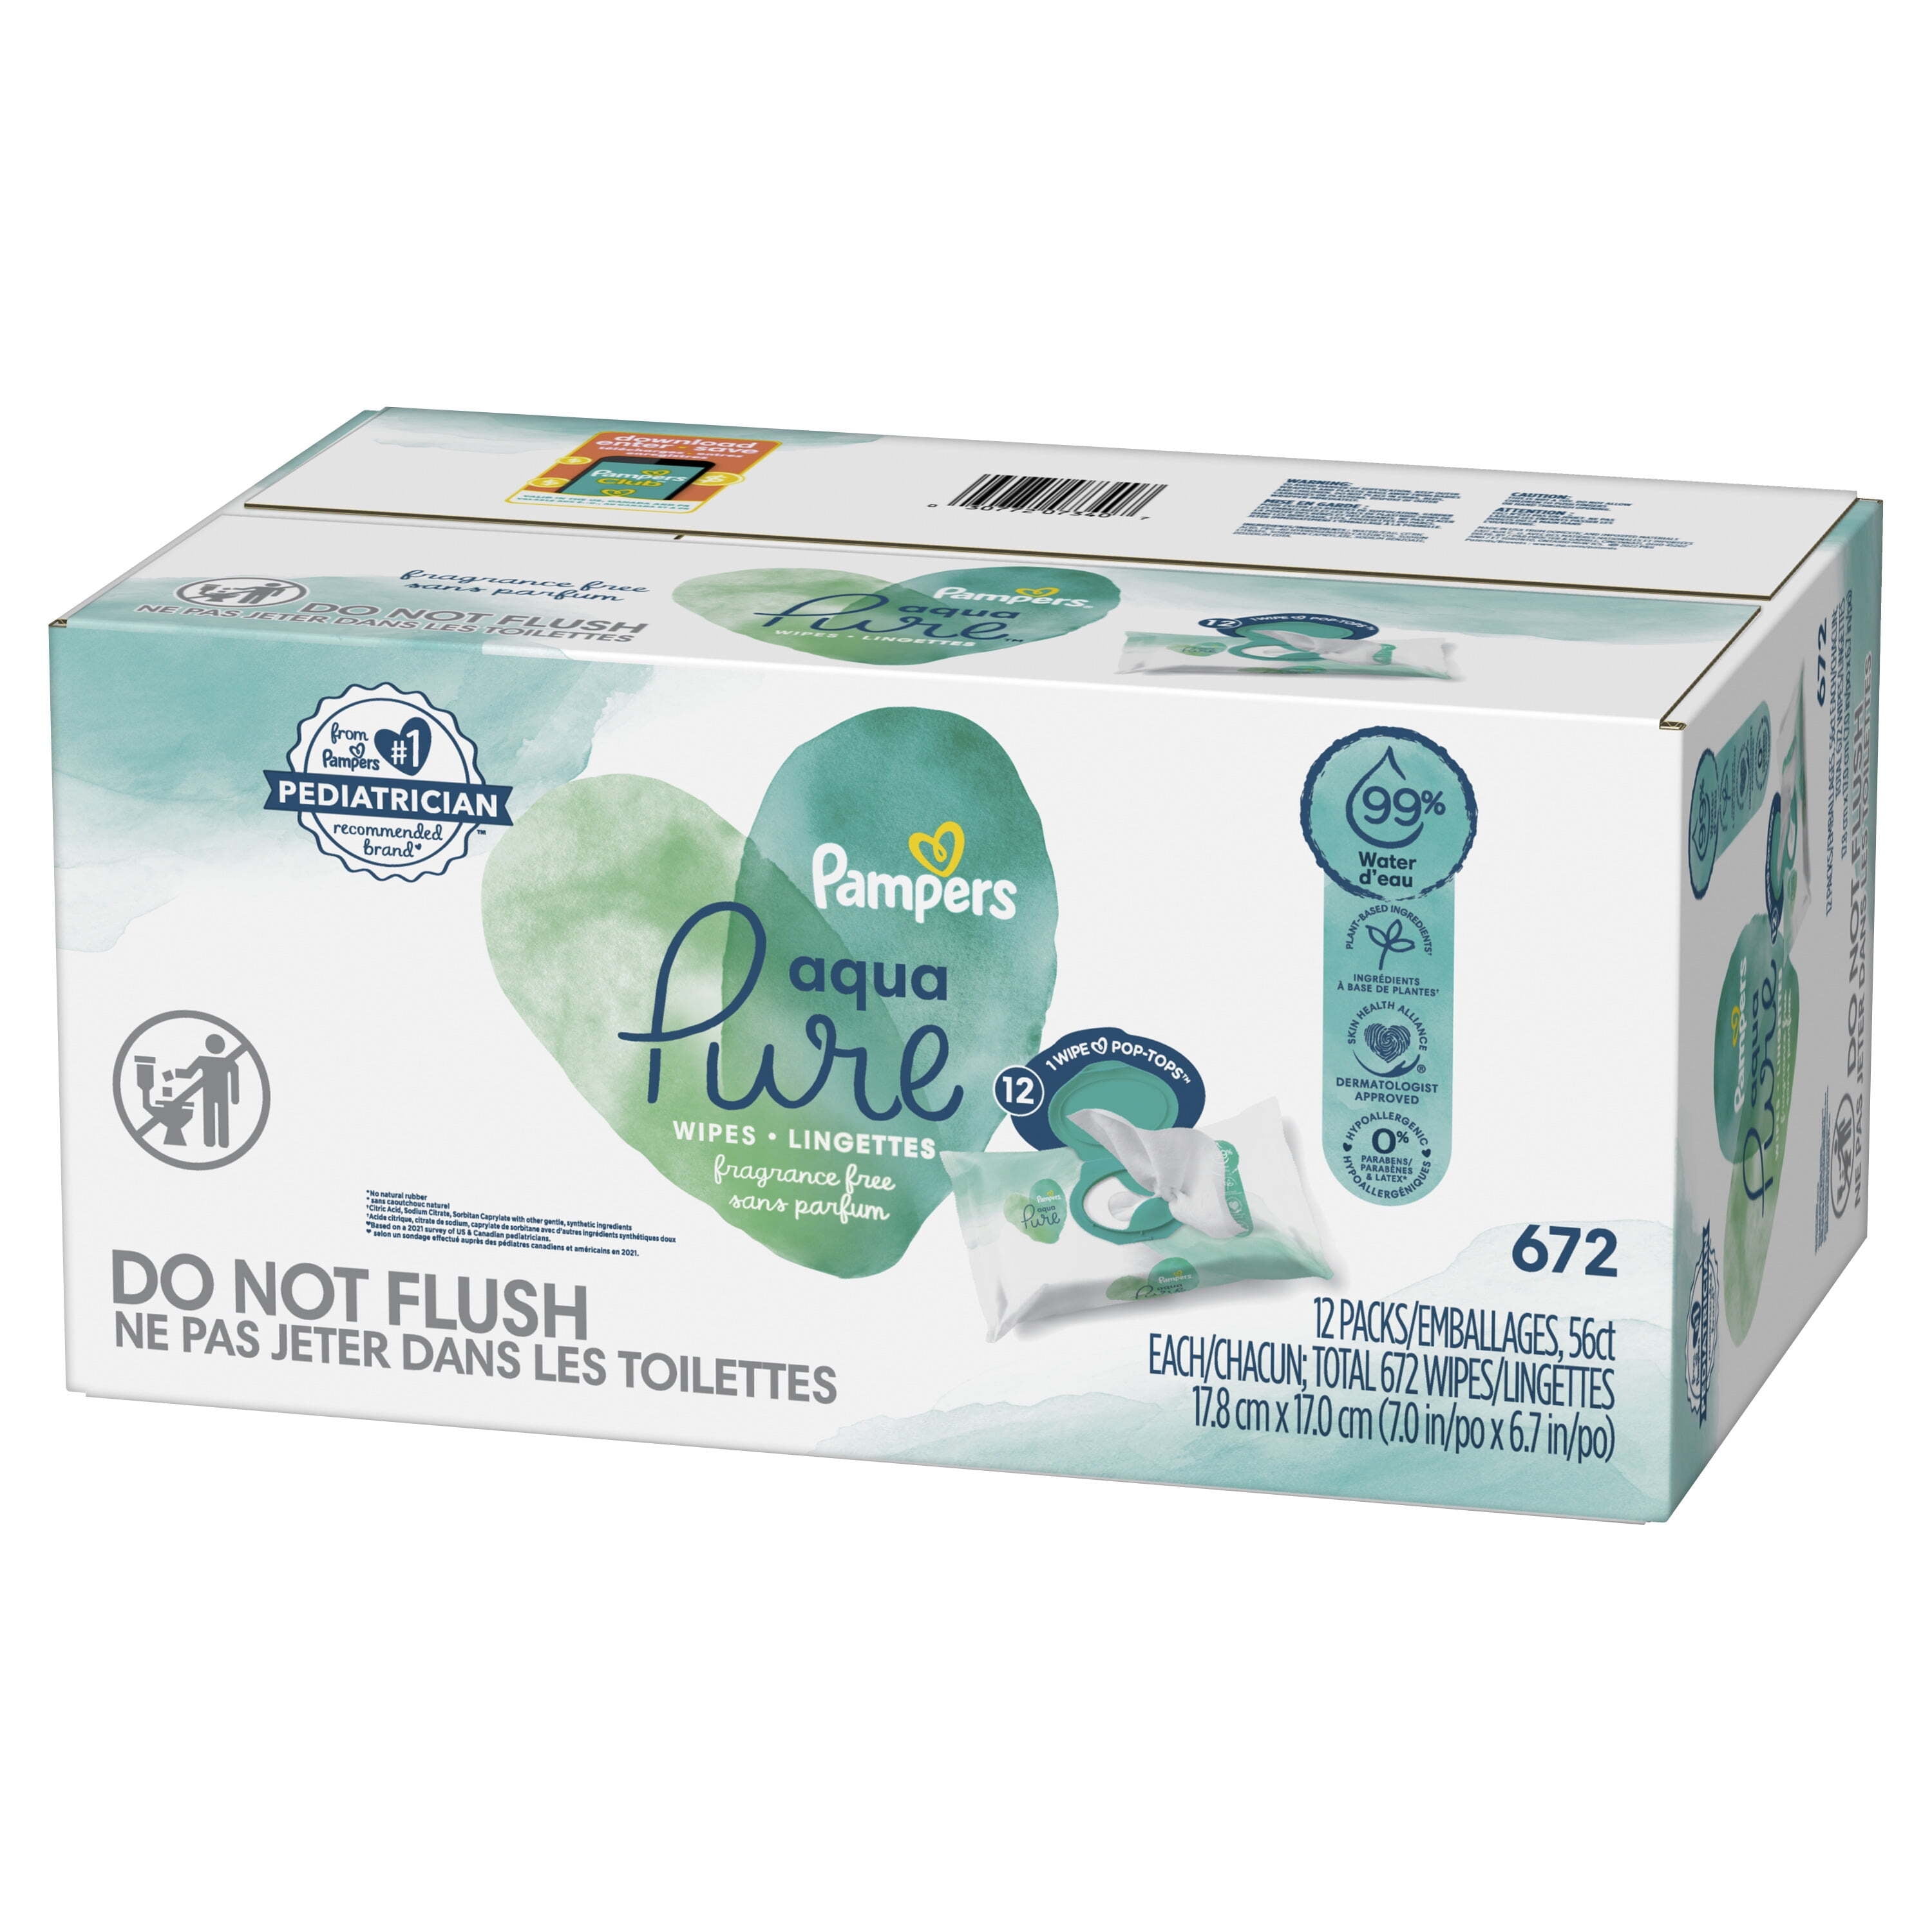  Pampers Aqua Pure - Toallitas sensibles para bebé, 10 unidades,  560 unidades : Todo lo demás